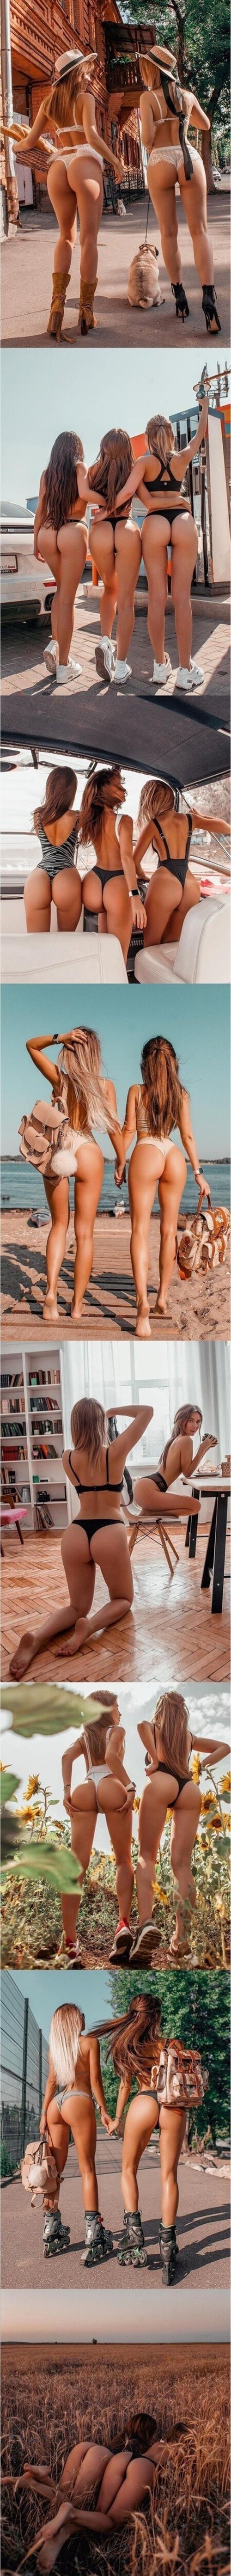 러시아녀들의 여름 여행